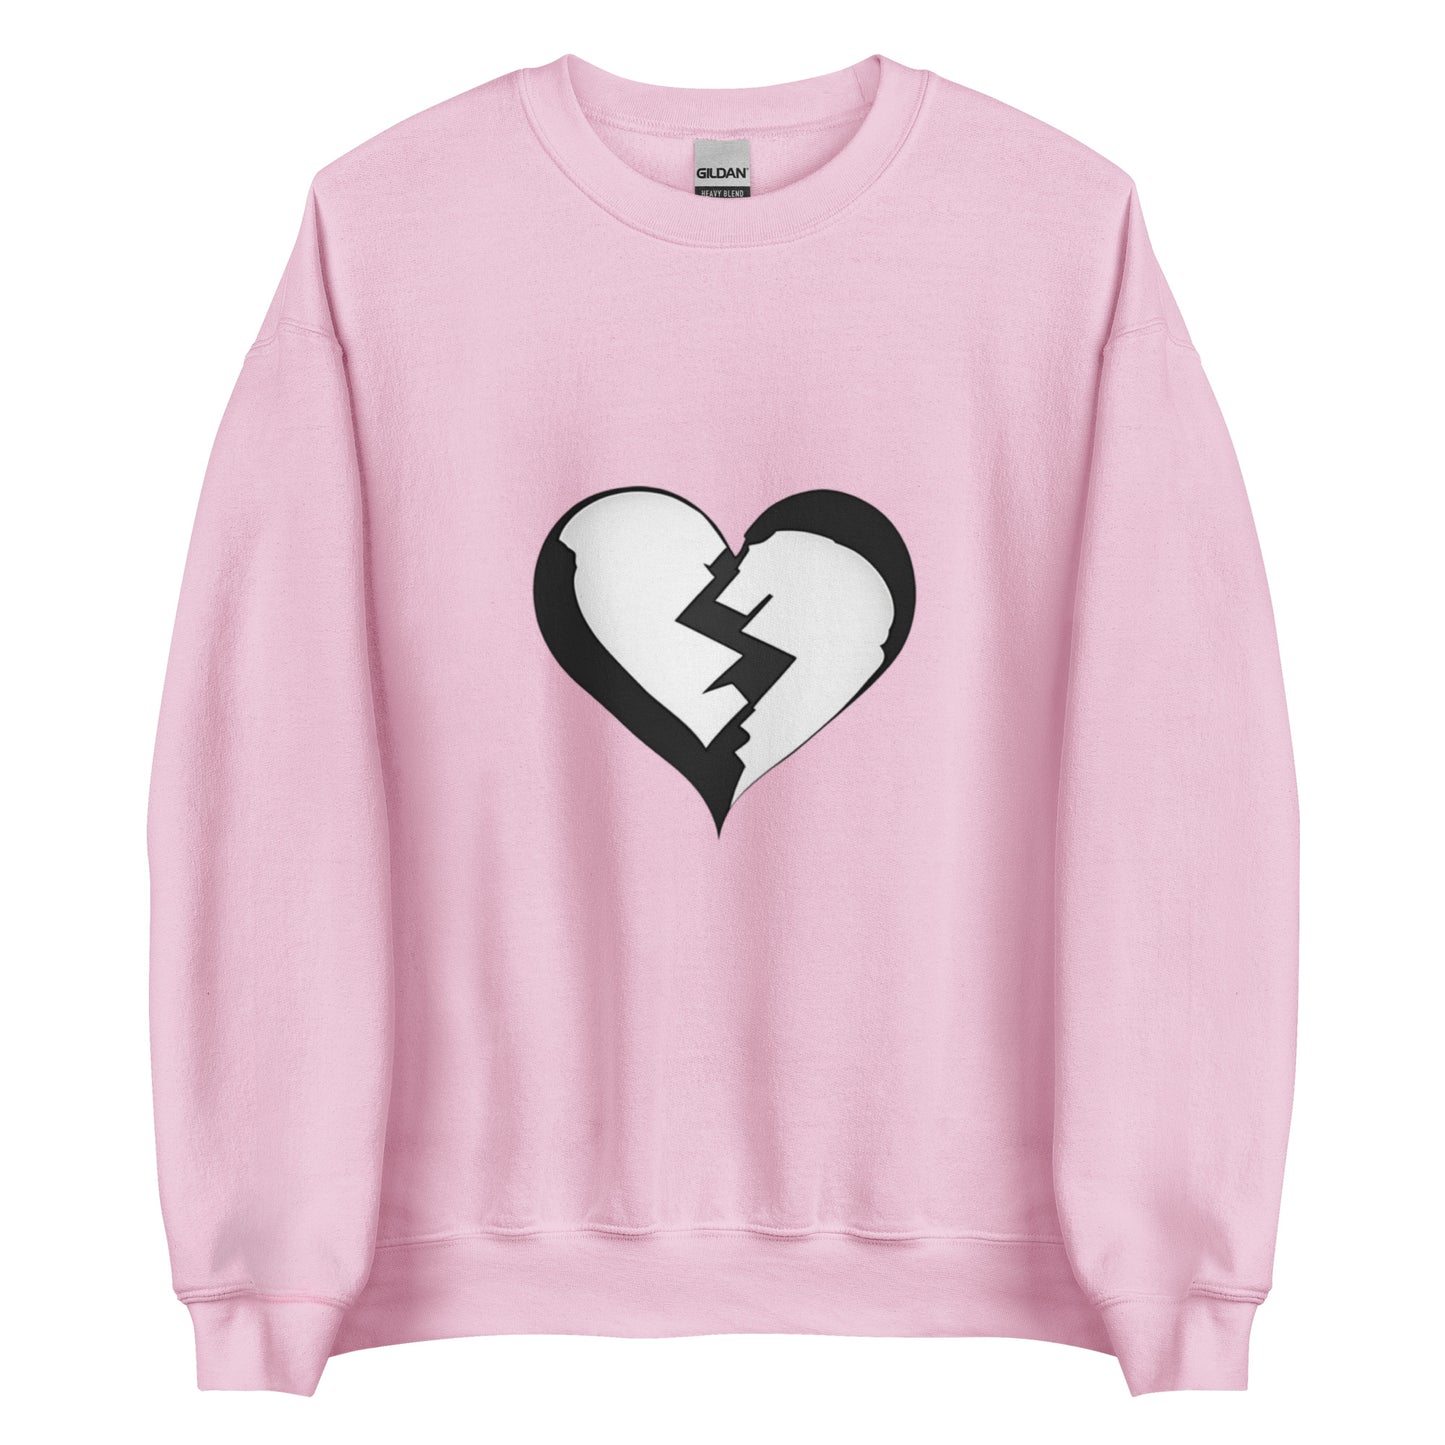 Broken Heart - Sweatshirt